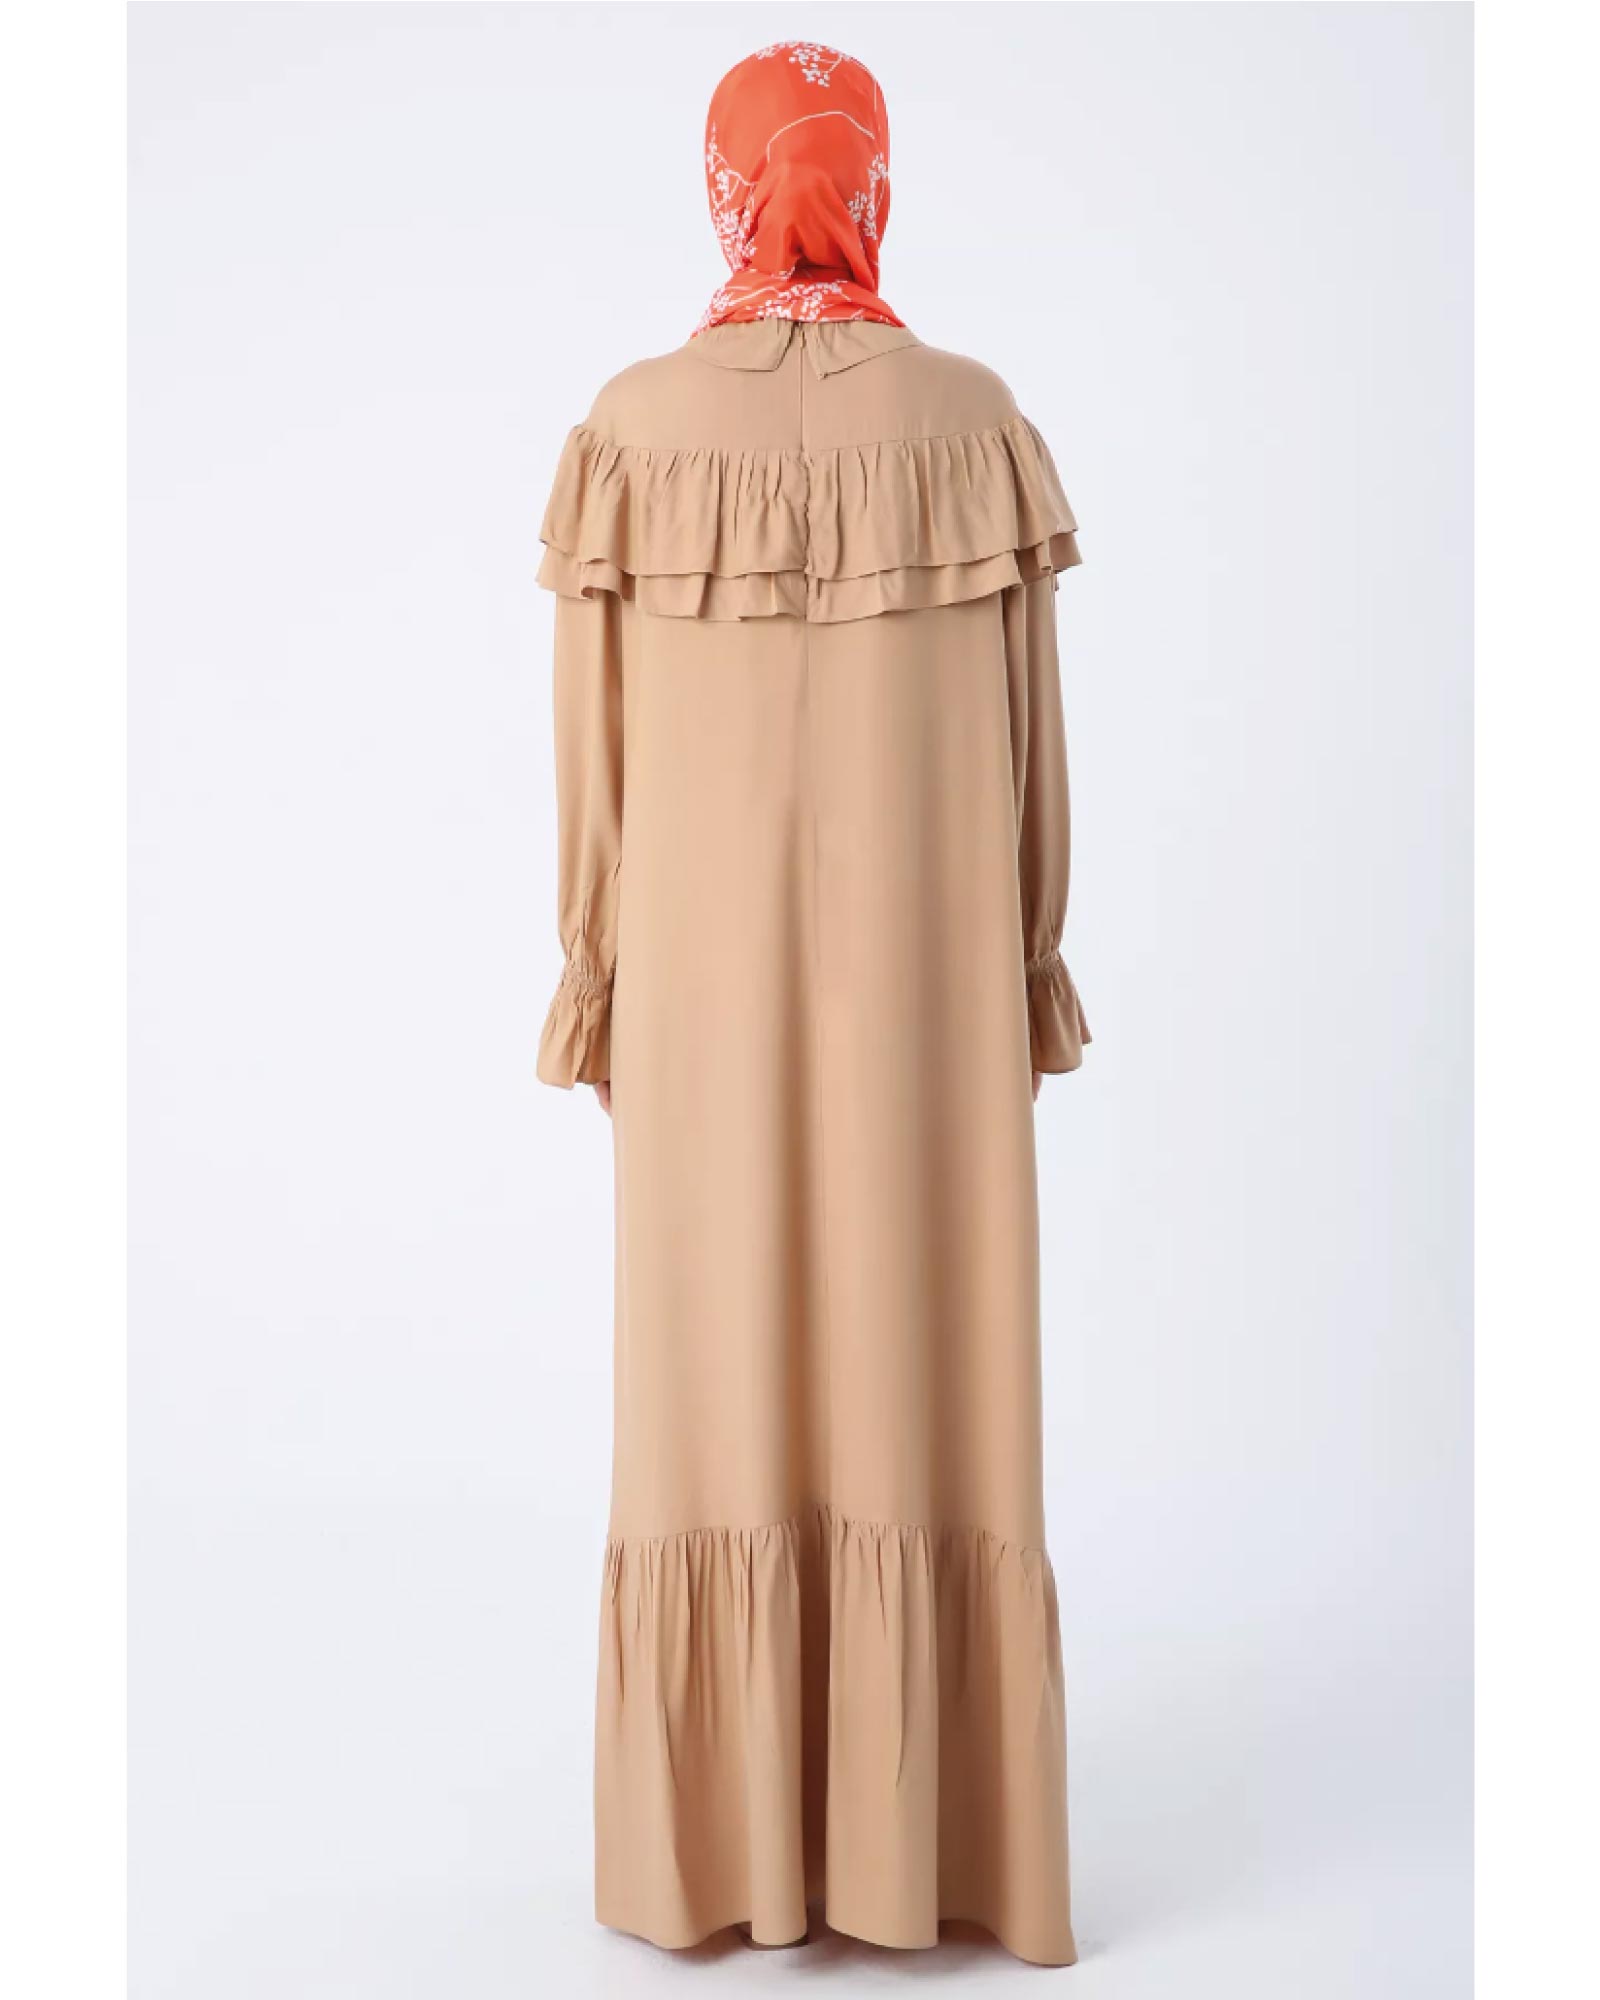 Robe hijab à volants sur les épaules et les manches